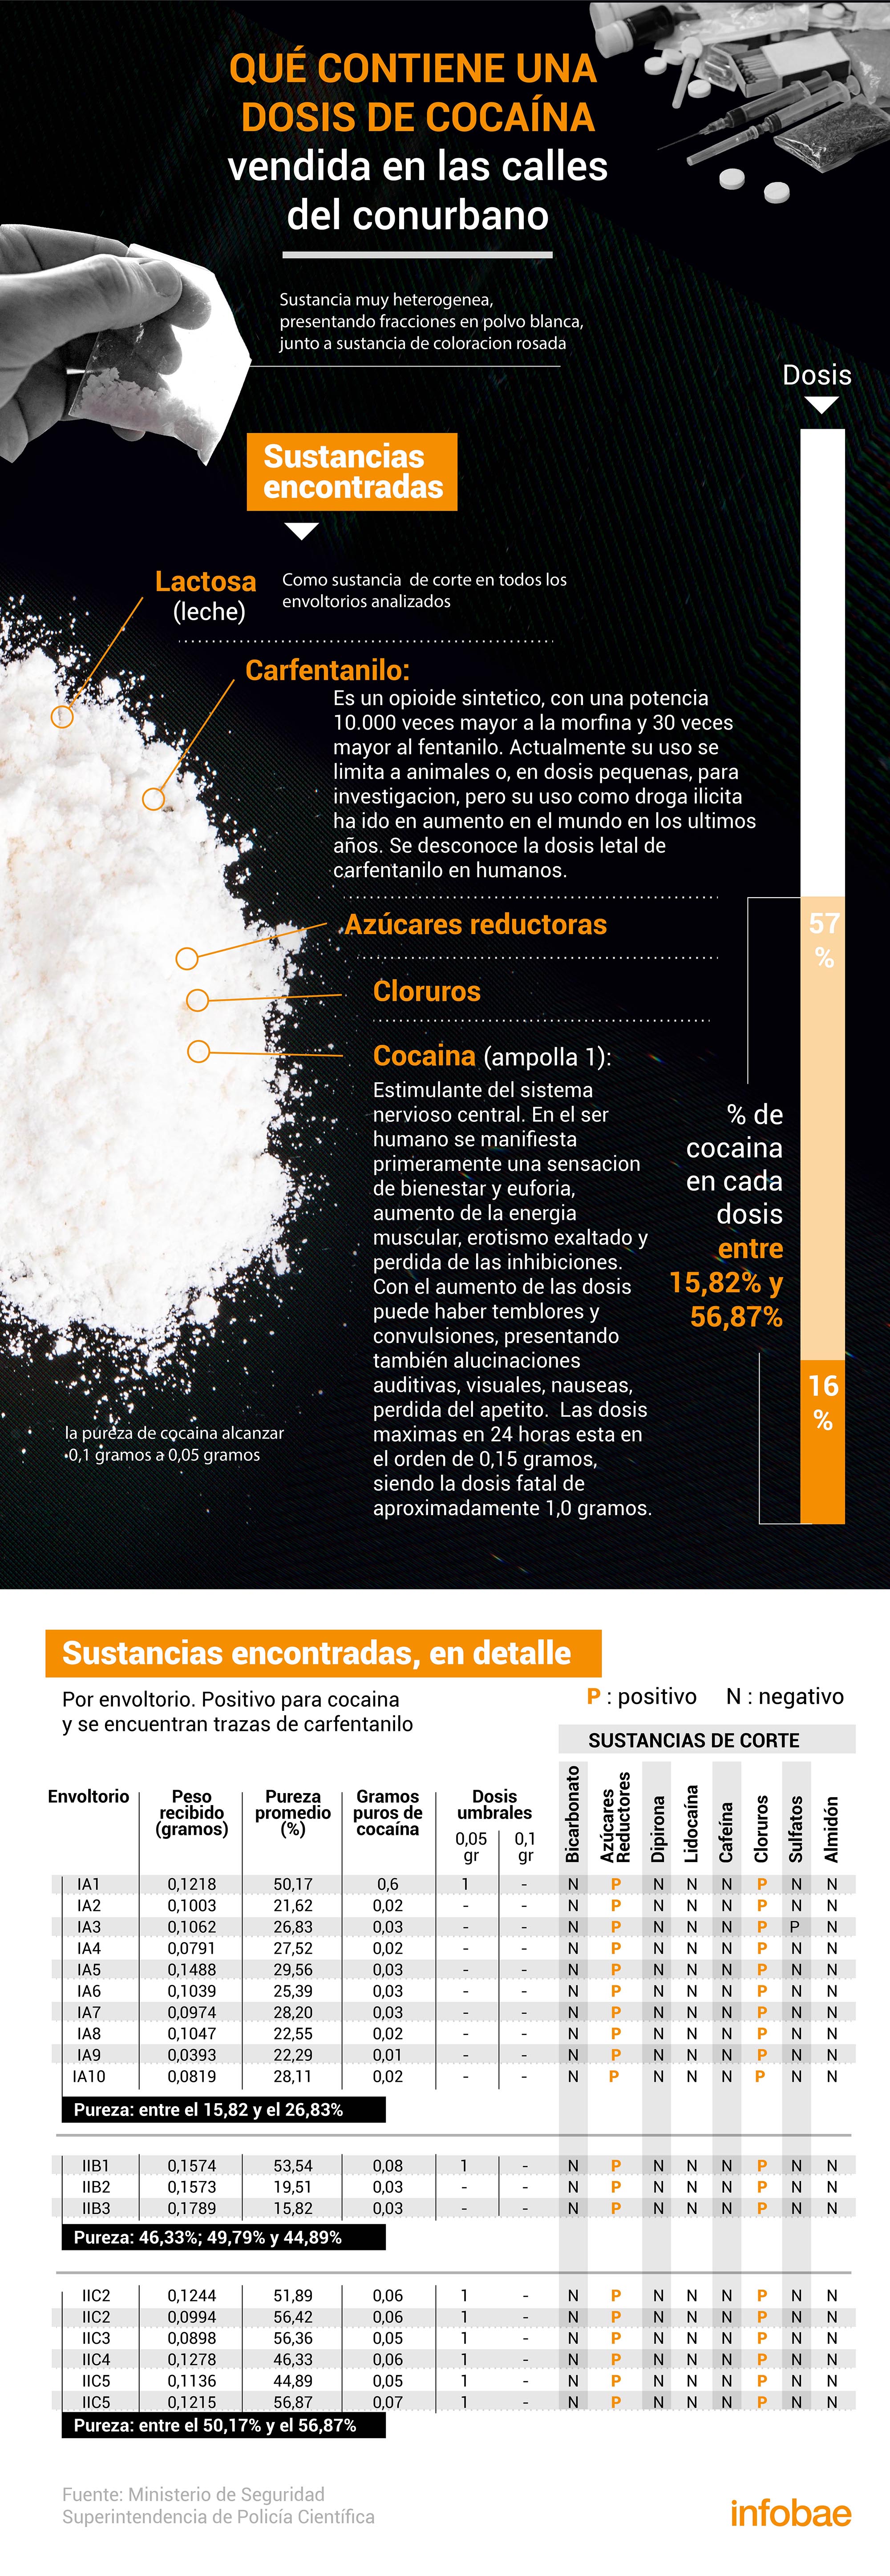 Los elementos de corte hallados en las muestras analizadas y vinculadas a la causa que se instruía en la UFI 16 de San Martín vinculada a las 24 muertes por la cocaína adulterada